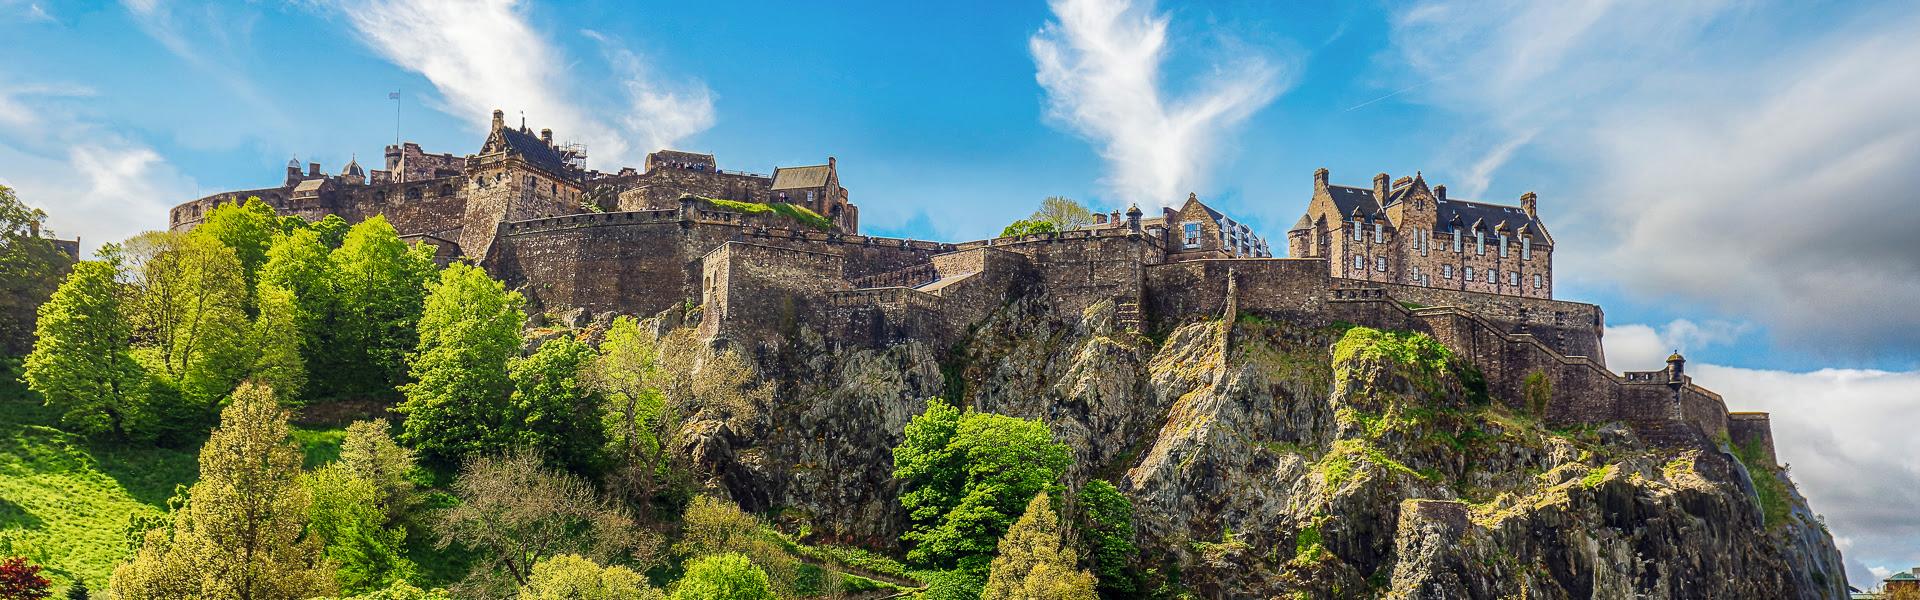 Burg bei Edinburgh in Schottland |  Tomas Sereda, iStockphoto.com / Chamleon